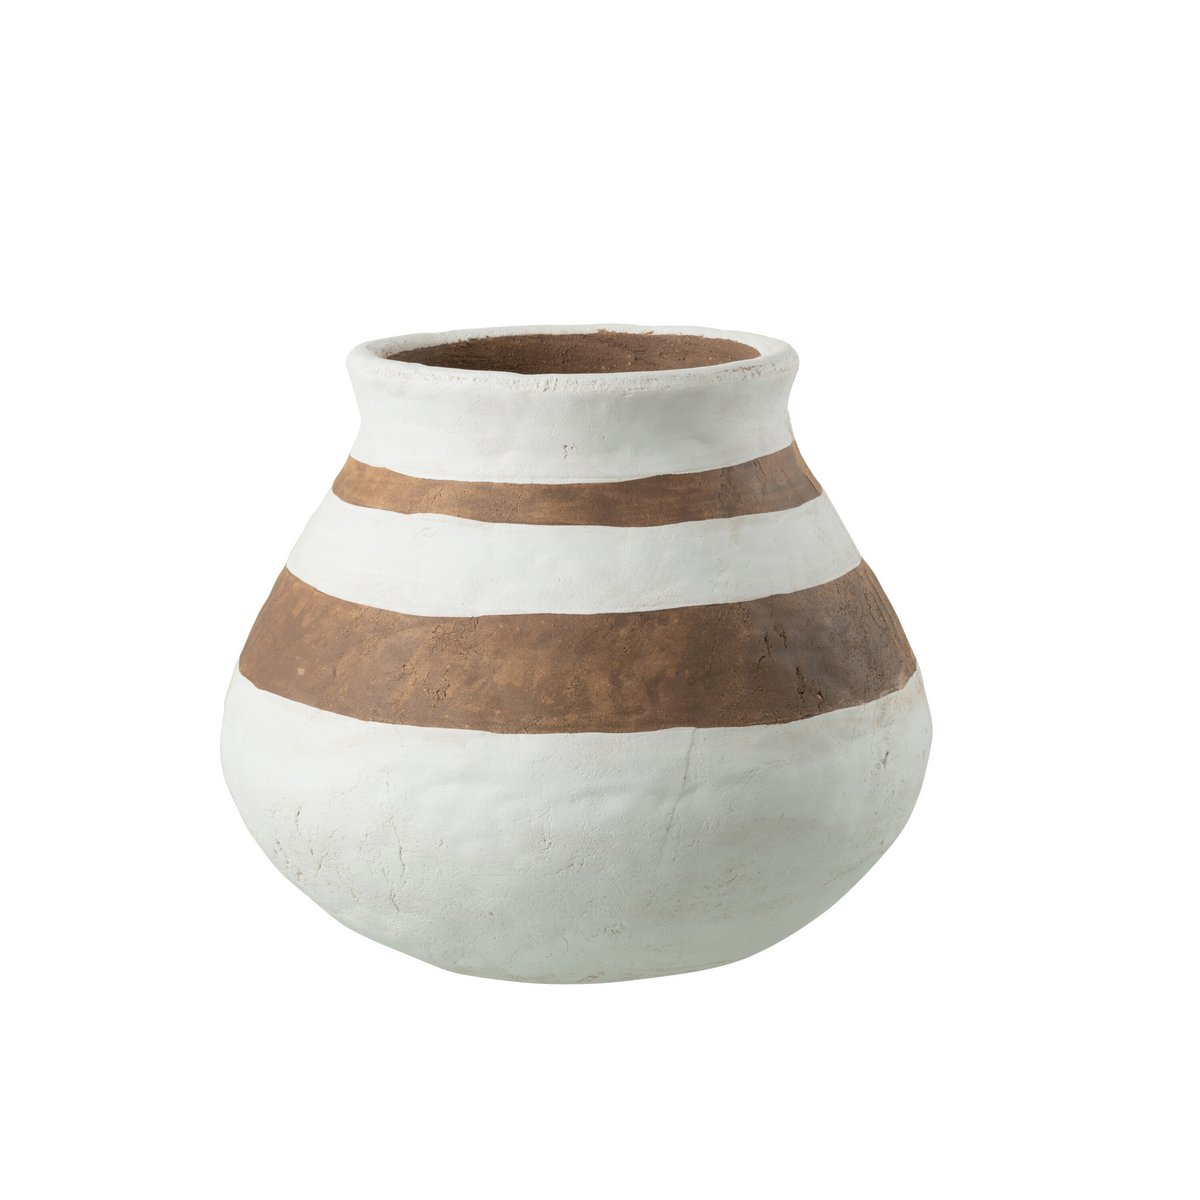 Vase Kenya Low - ceramic, white/brown, large